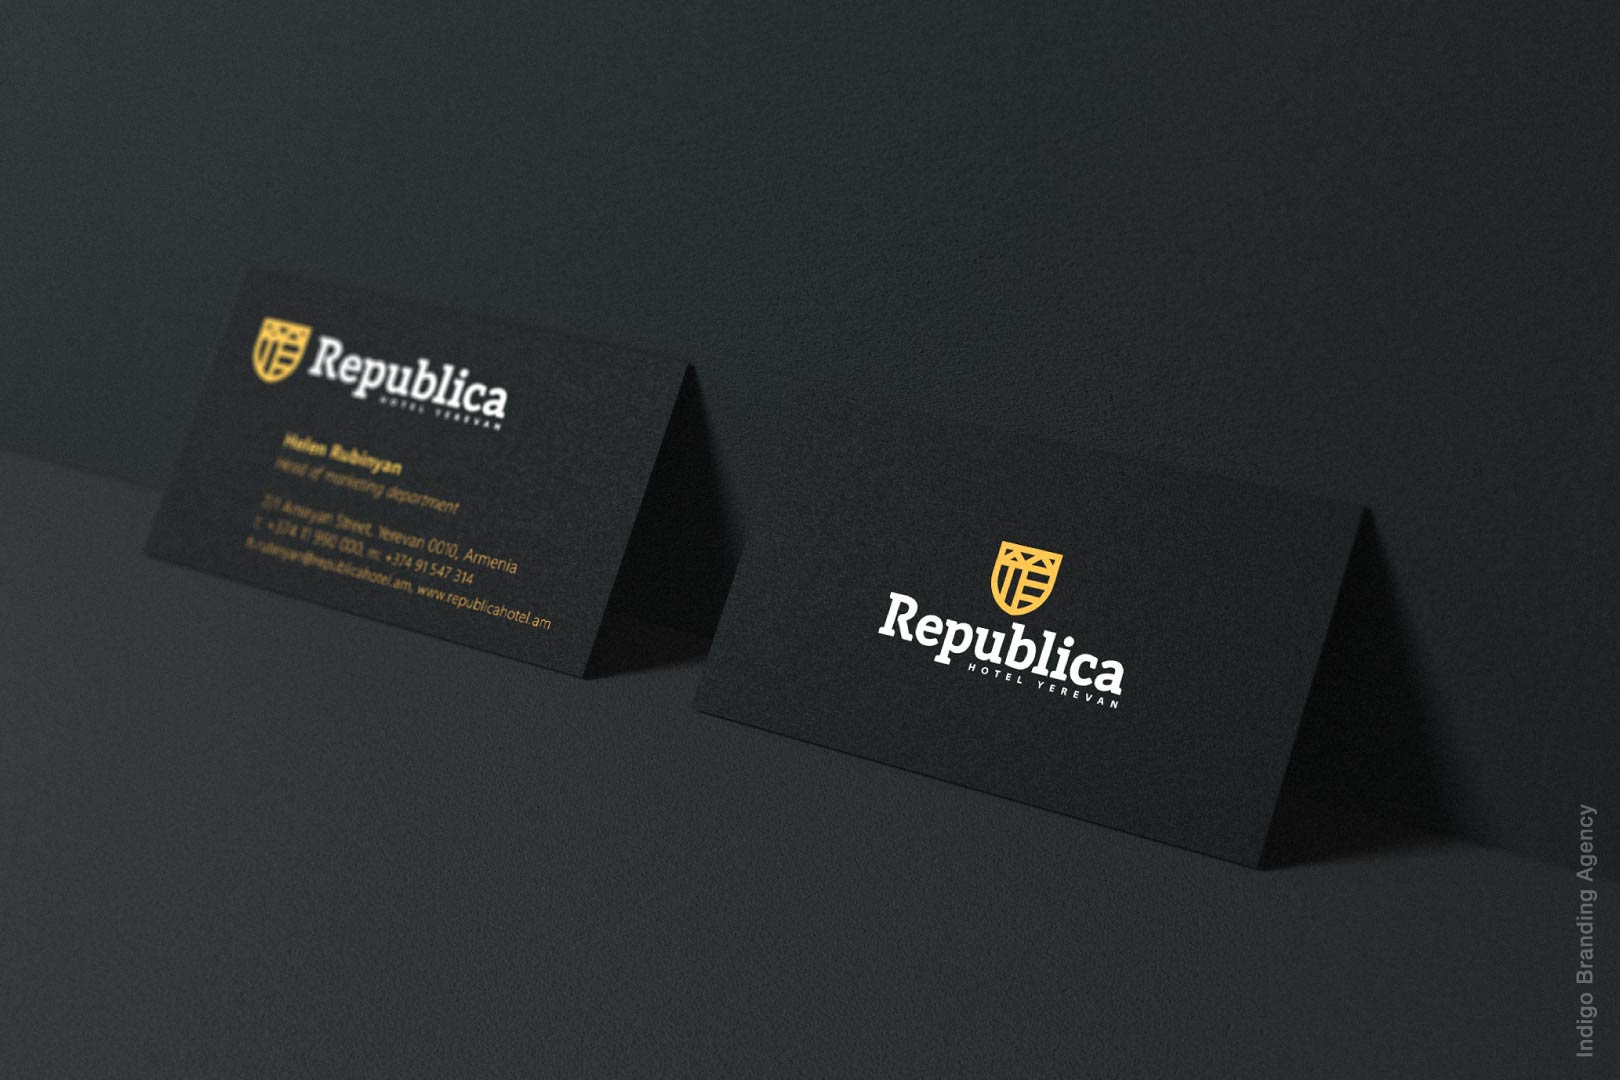 Republica hotel branding and logo design by Indigo branding